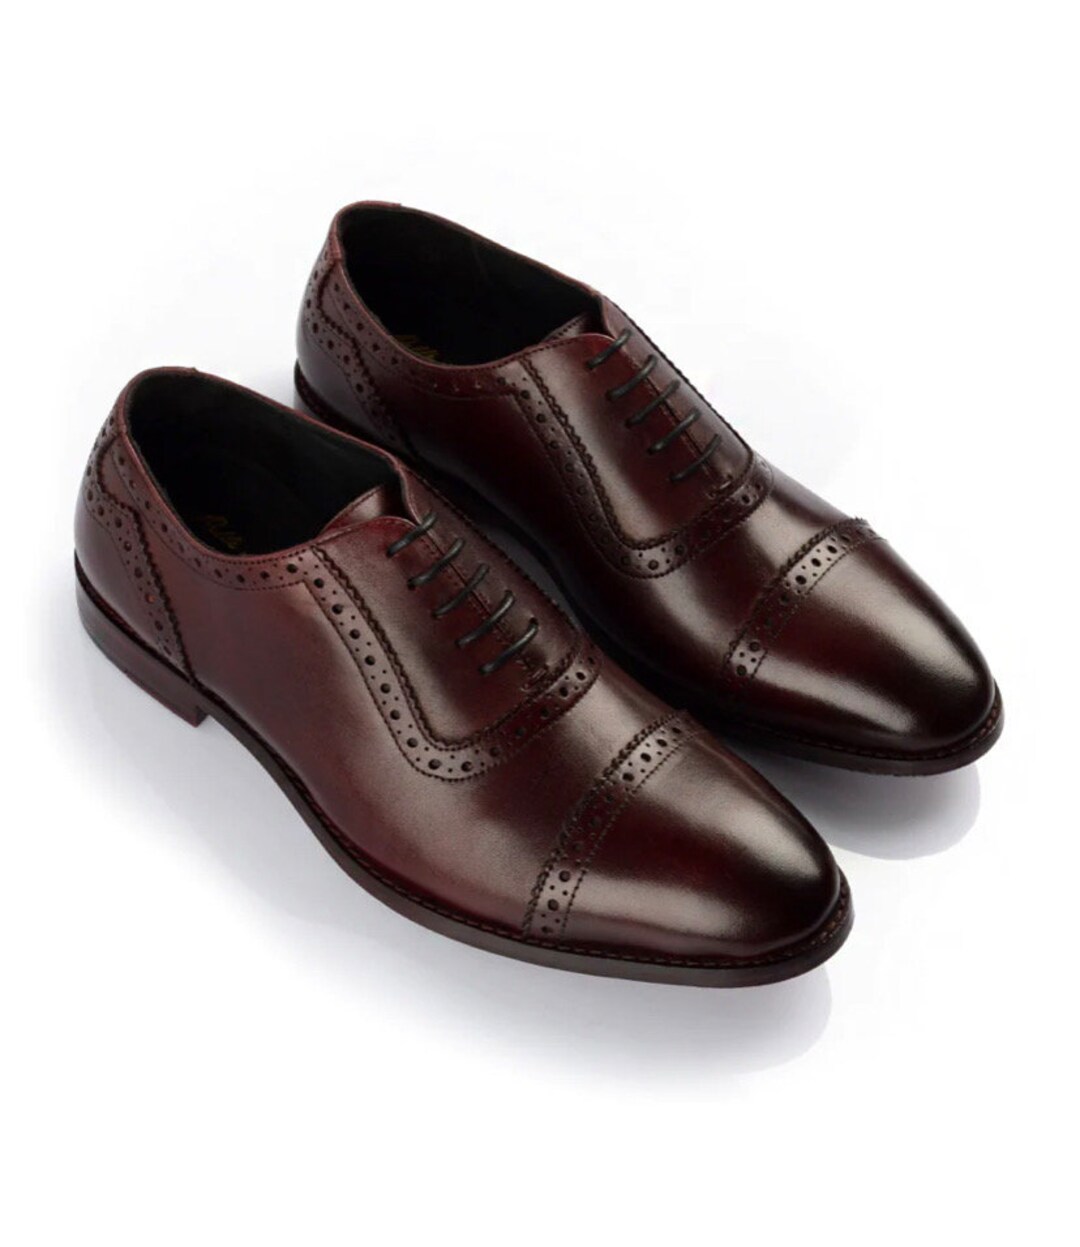 Men's Handmade Formal Shoes Tassels Dark Brown Burnished Elegant  Formal Dress Up